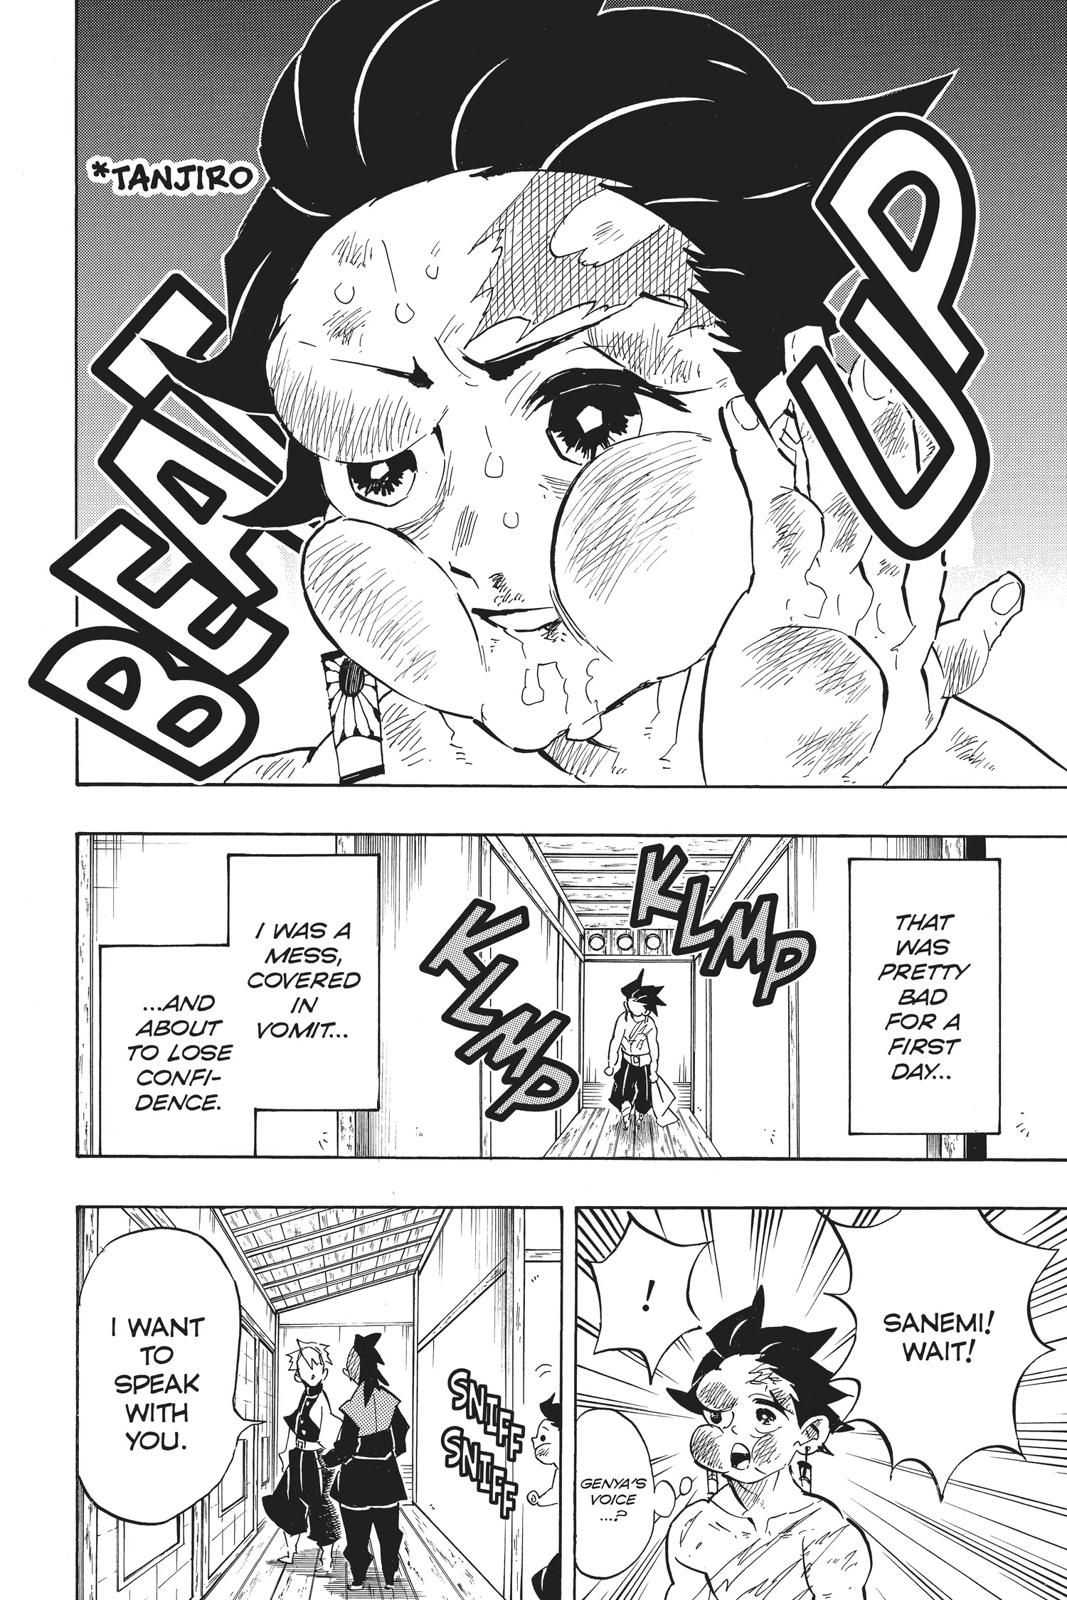 Demon Slayer Manga Manga Chapter - 132 - image 9